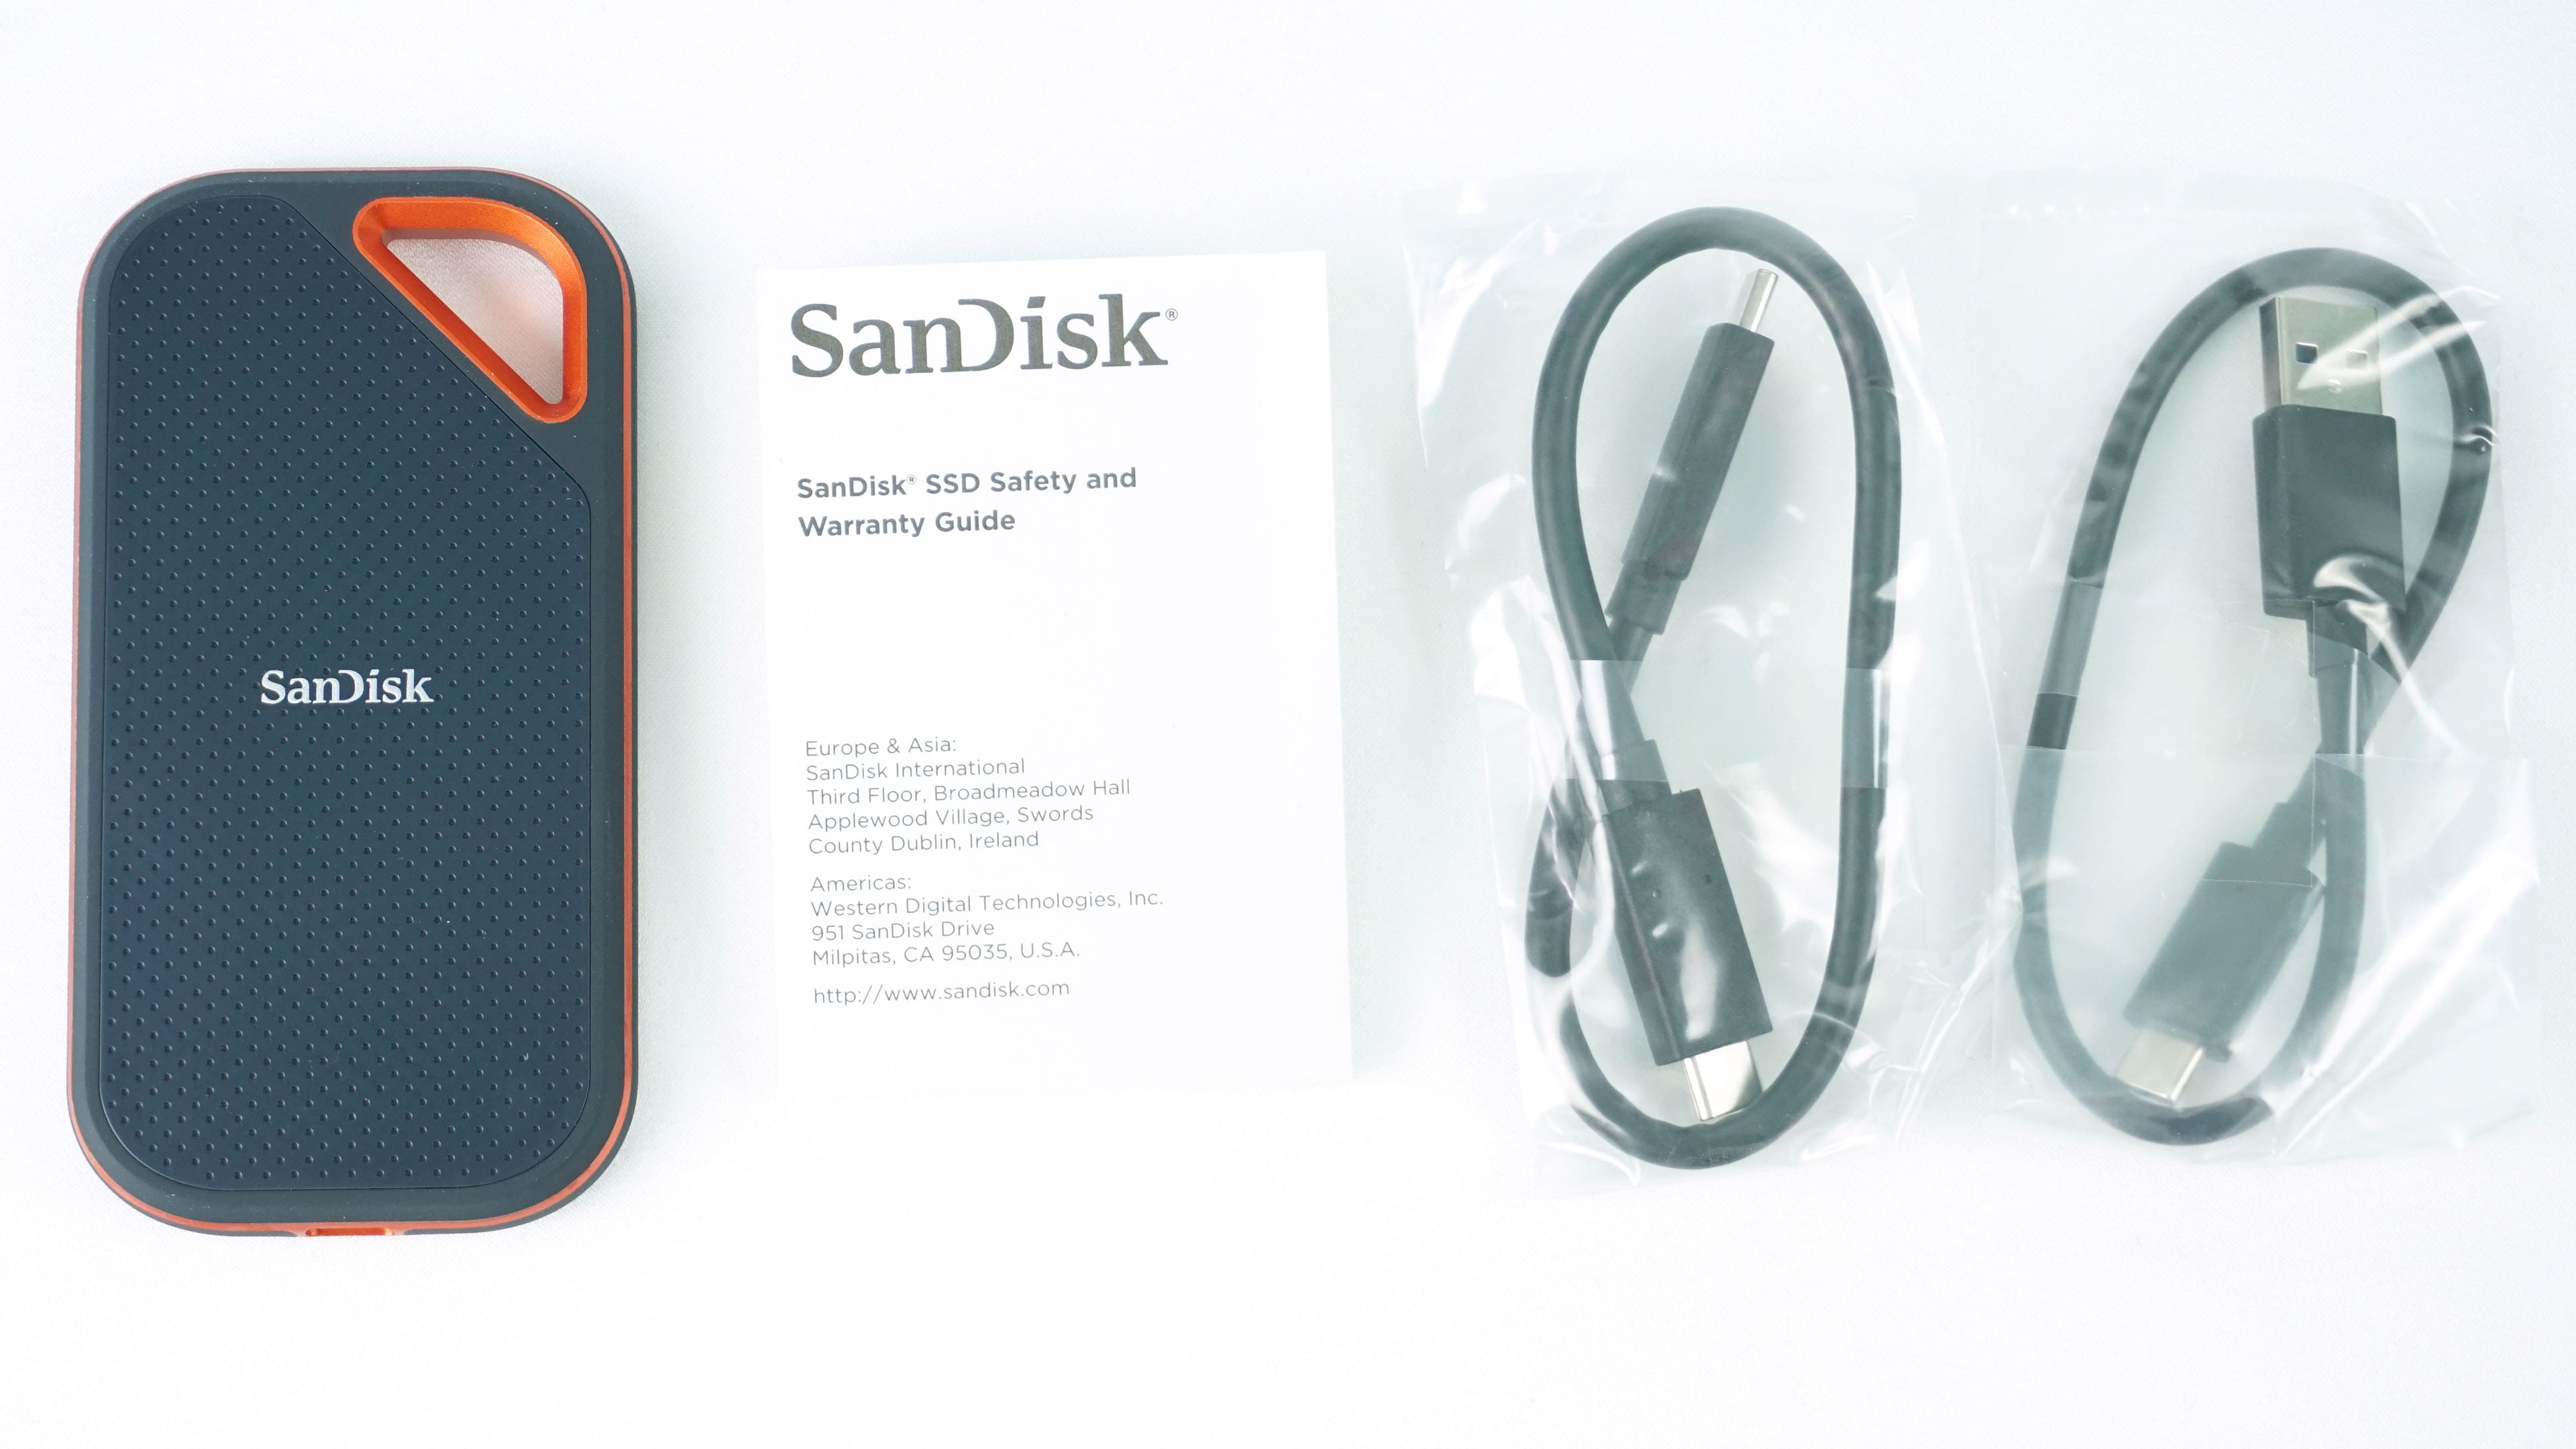 SanDisk Extreme Pro SSD V2: bigger and faster - HWCooling.net